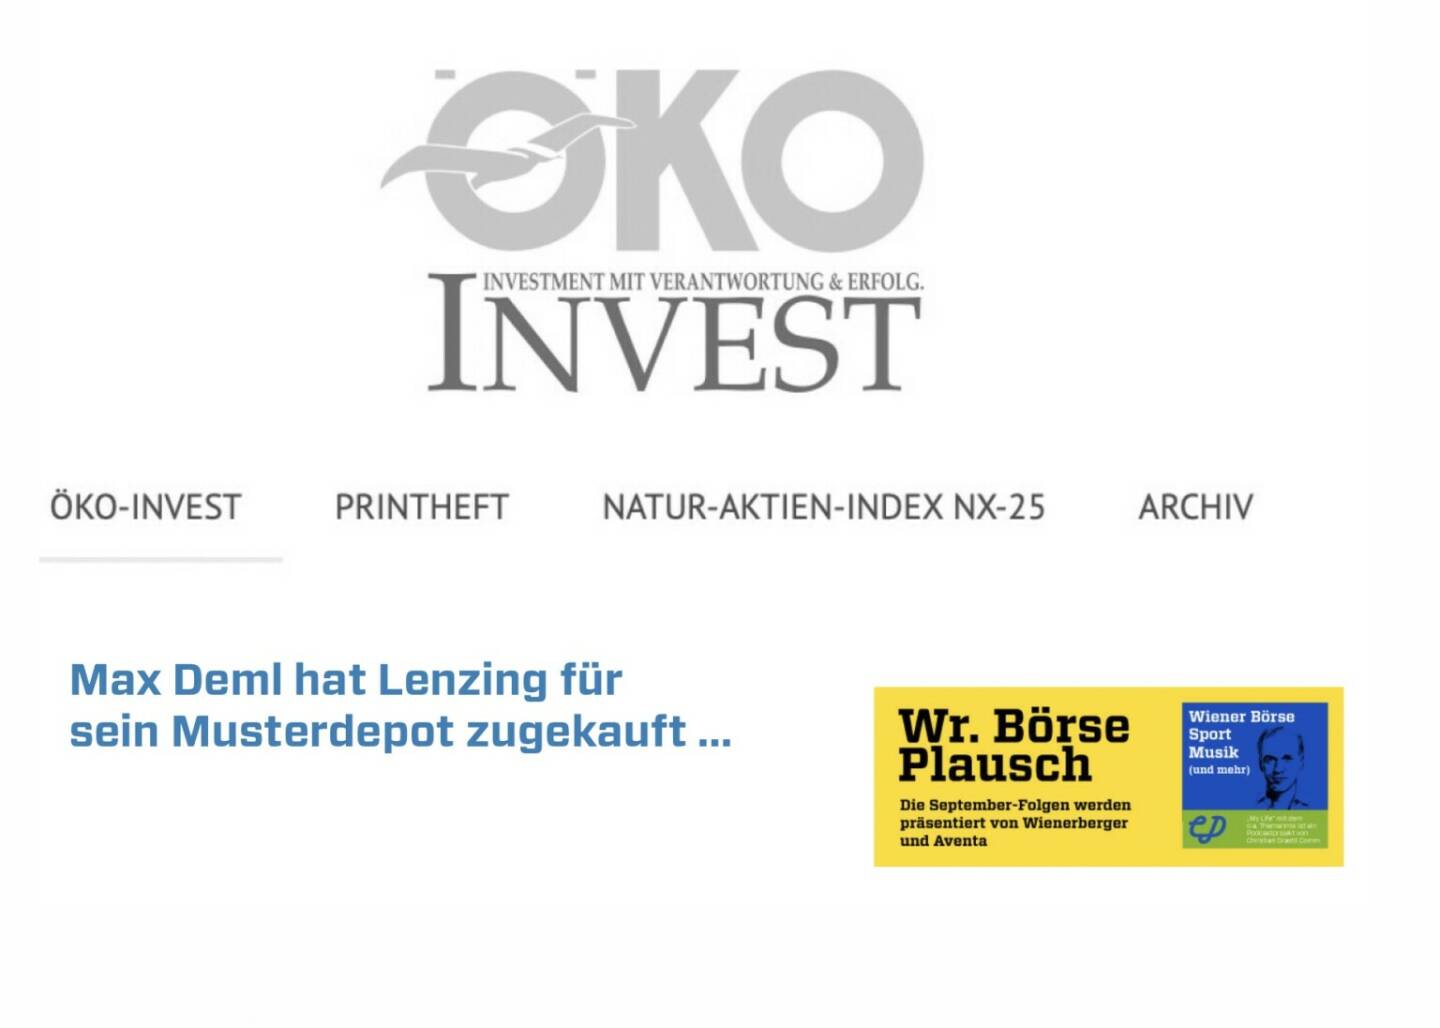 Max Deml hat Lenzing für sein Musterdepot zugekauft. Dies und mehr in Folge S3/16 der Wiener Börse Pläusche im Rahmen von http://www.christian-drastil.com/podcast . 